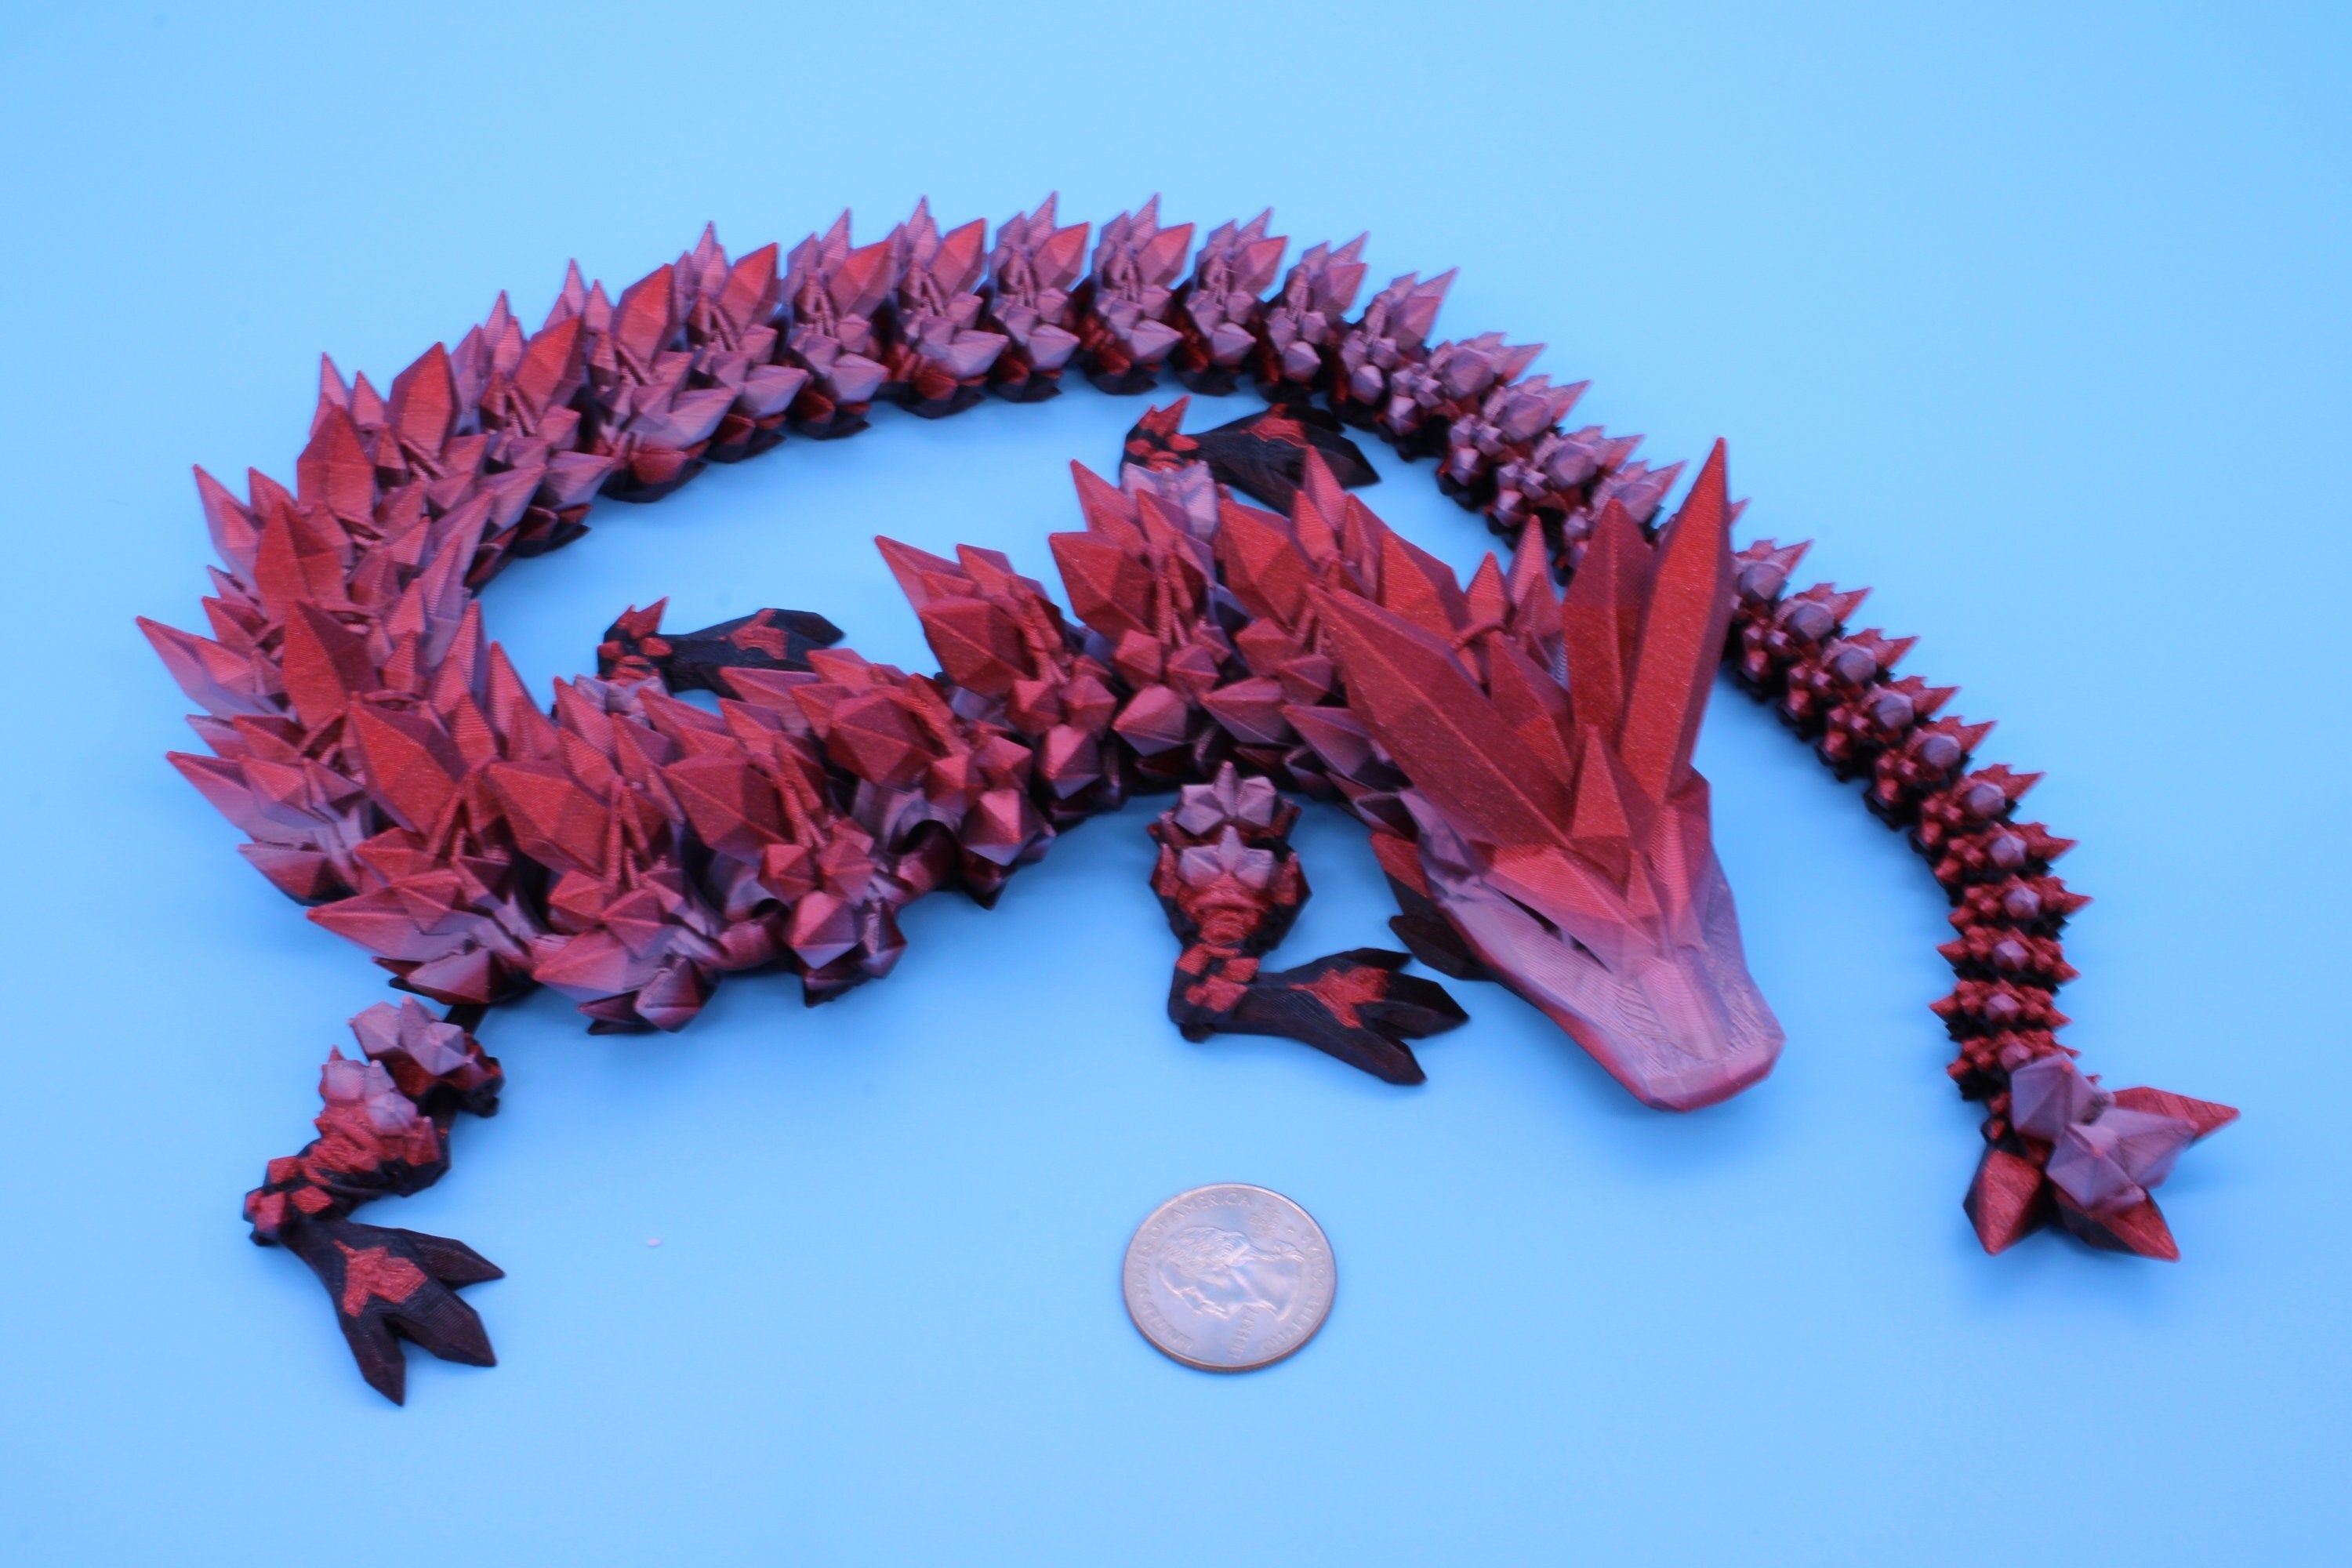 Rainbow Pink & Dark Crystal Dragon | 3D Printed Articulating Dragon | Flexi Toy | Adult Fidget Toy | Dragon Buddy ready for you! 24 inch.